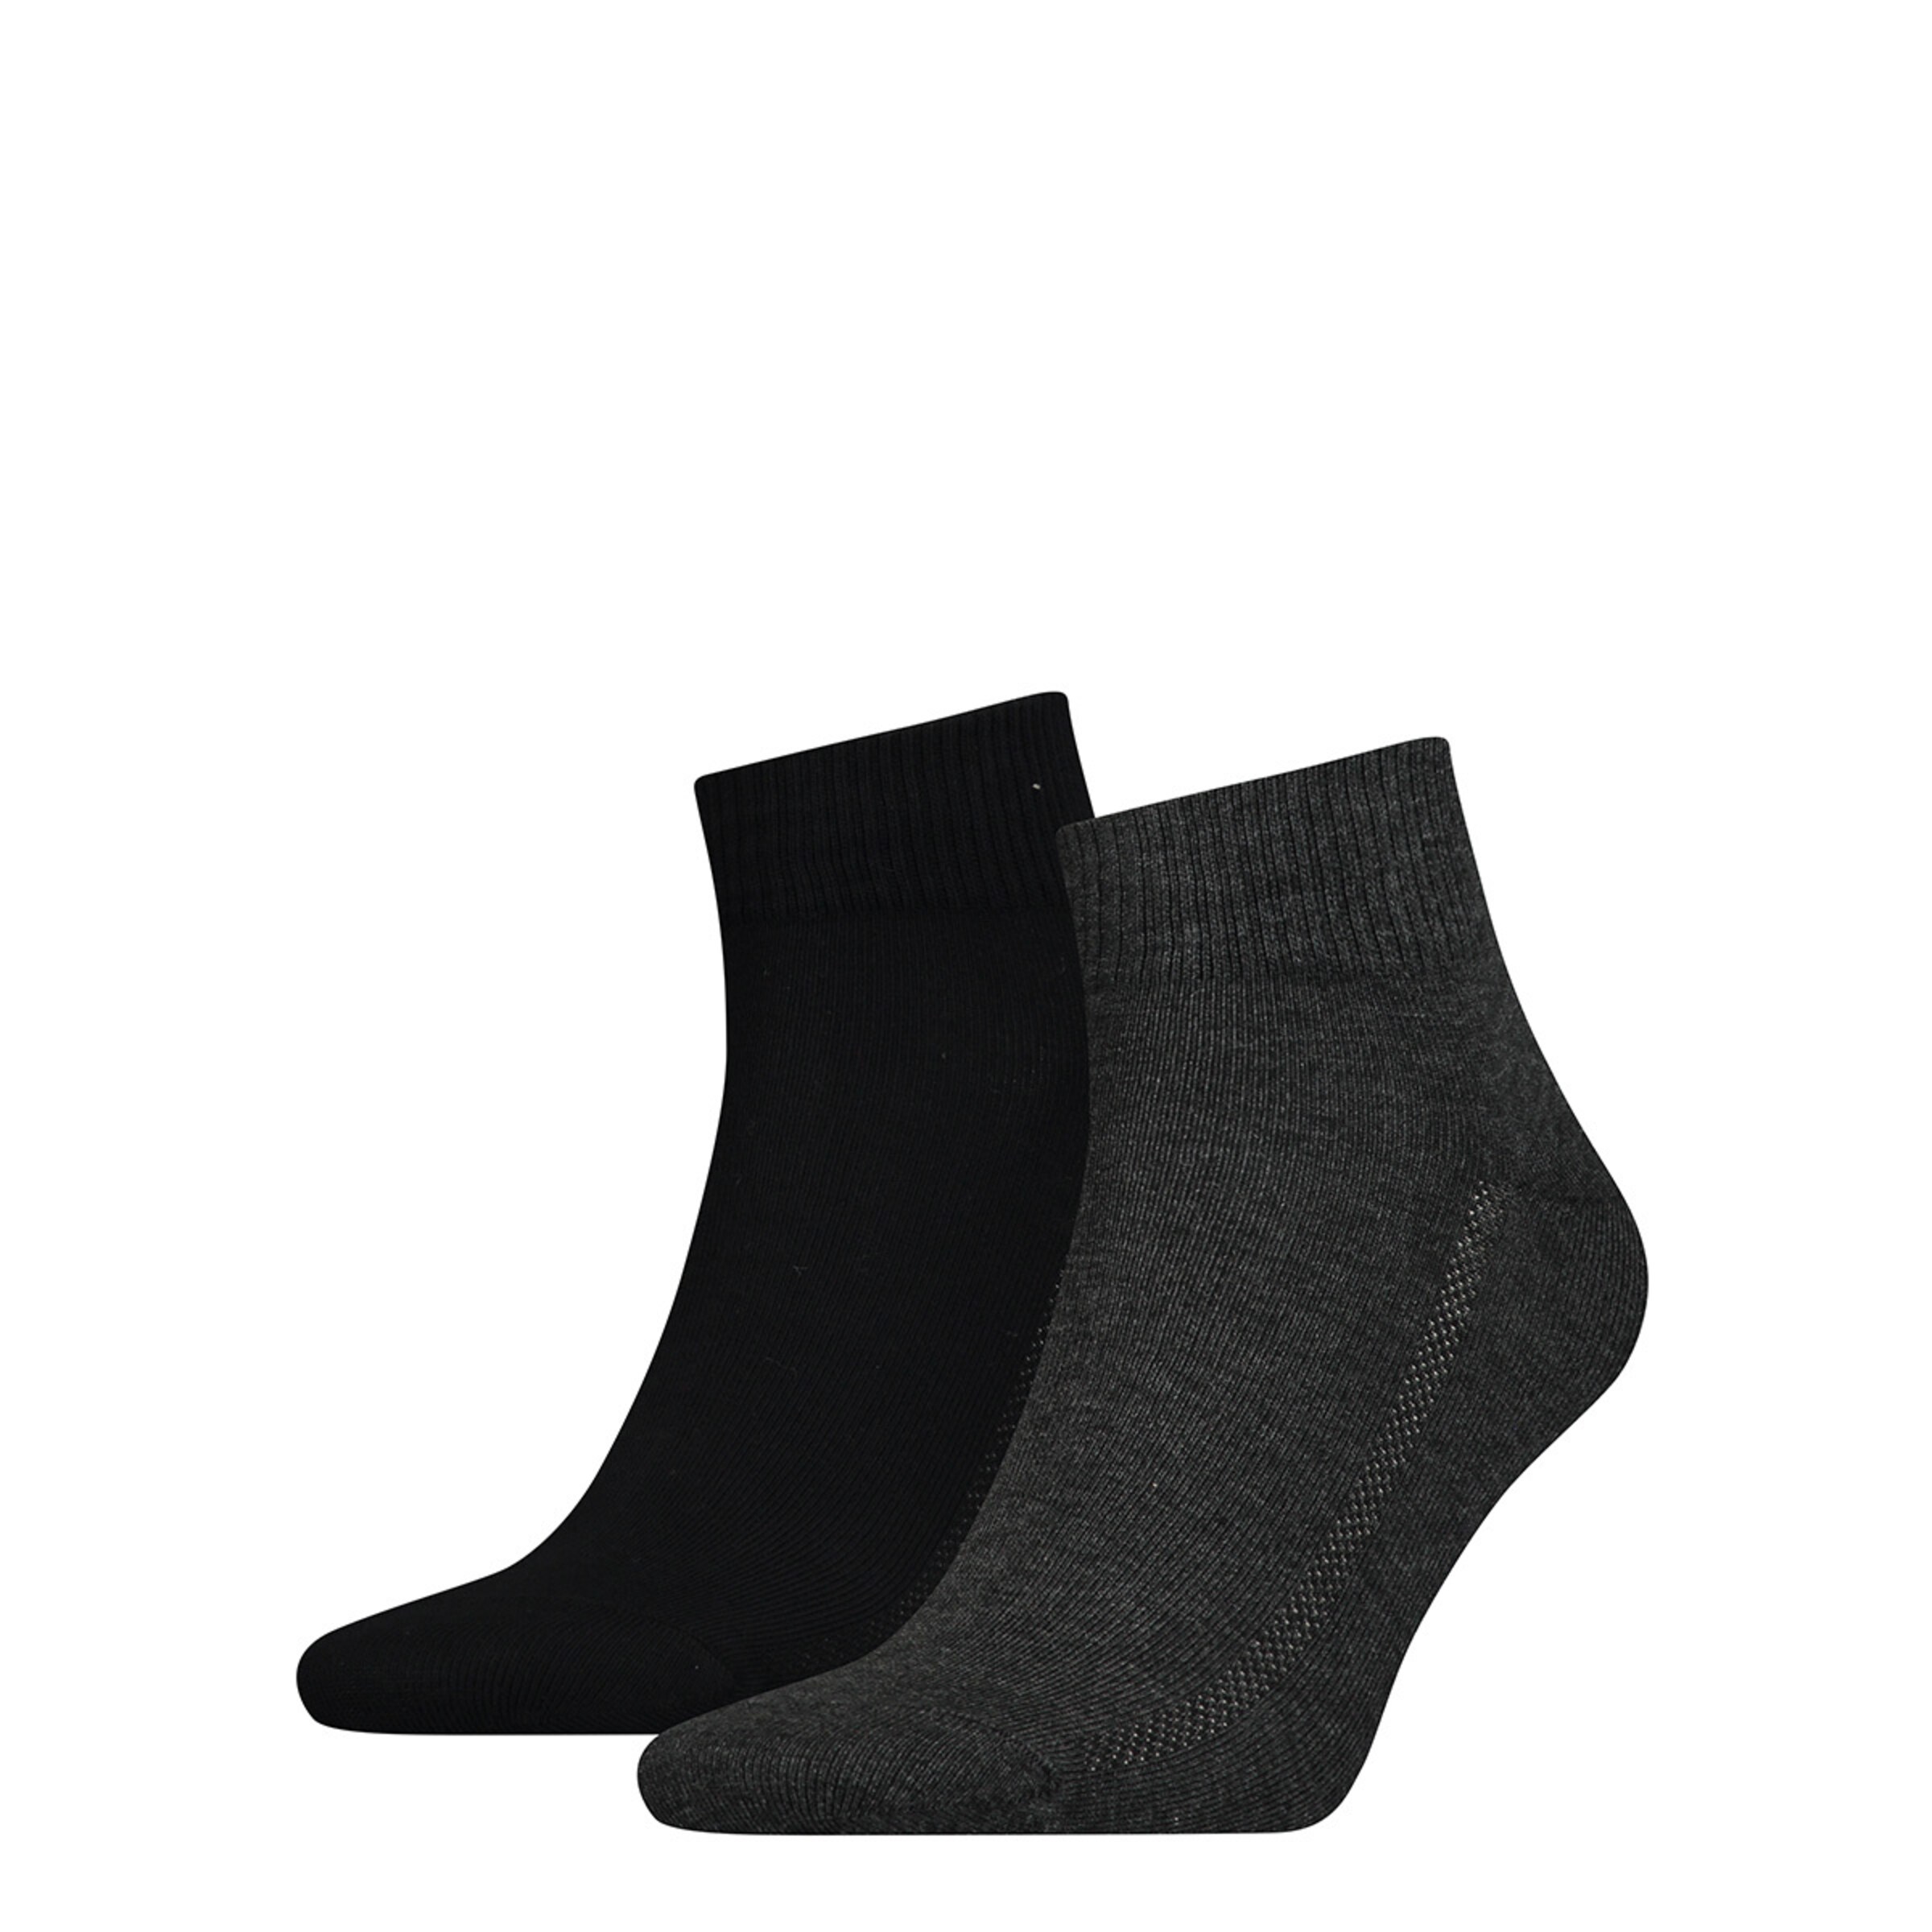 Männer Wäsche LEVI'S Socken in Grau, Schwarz - BG51666